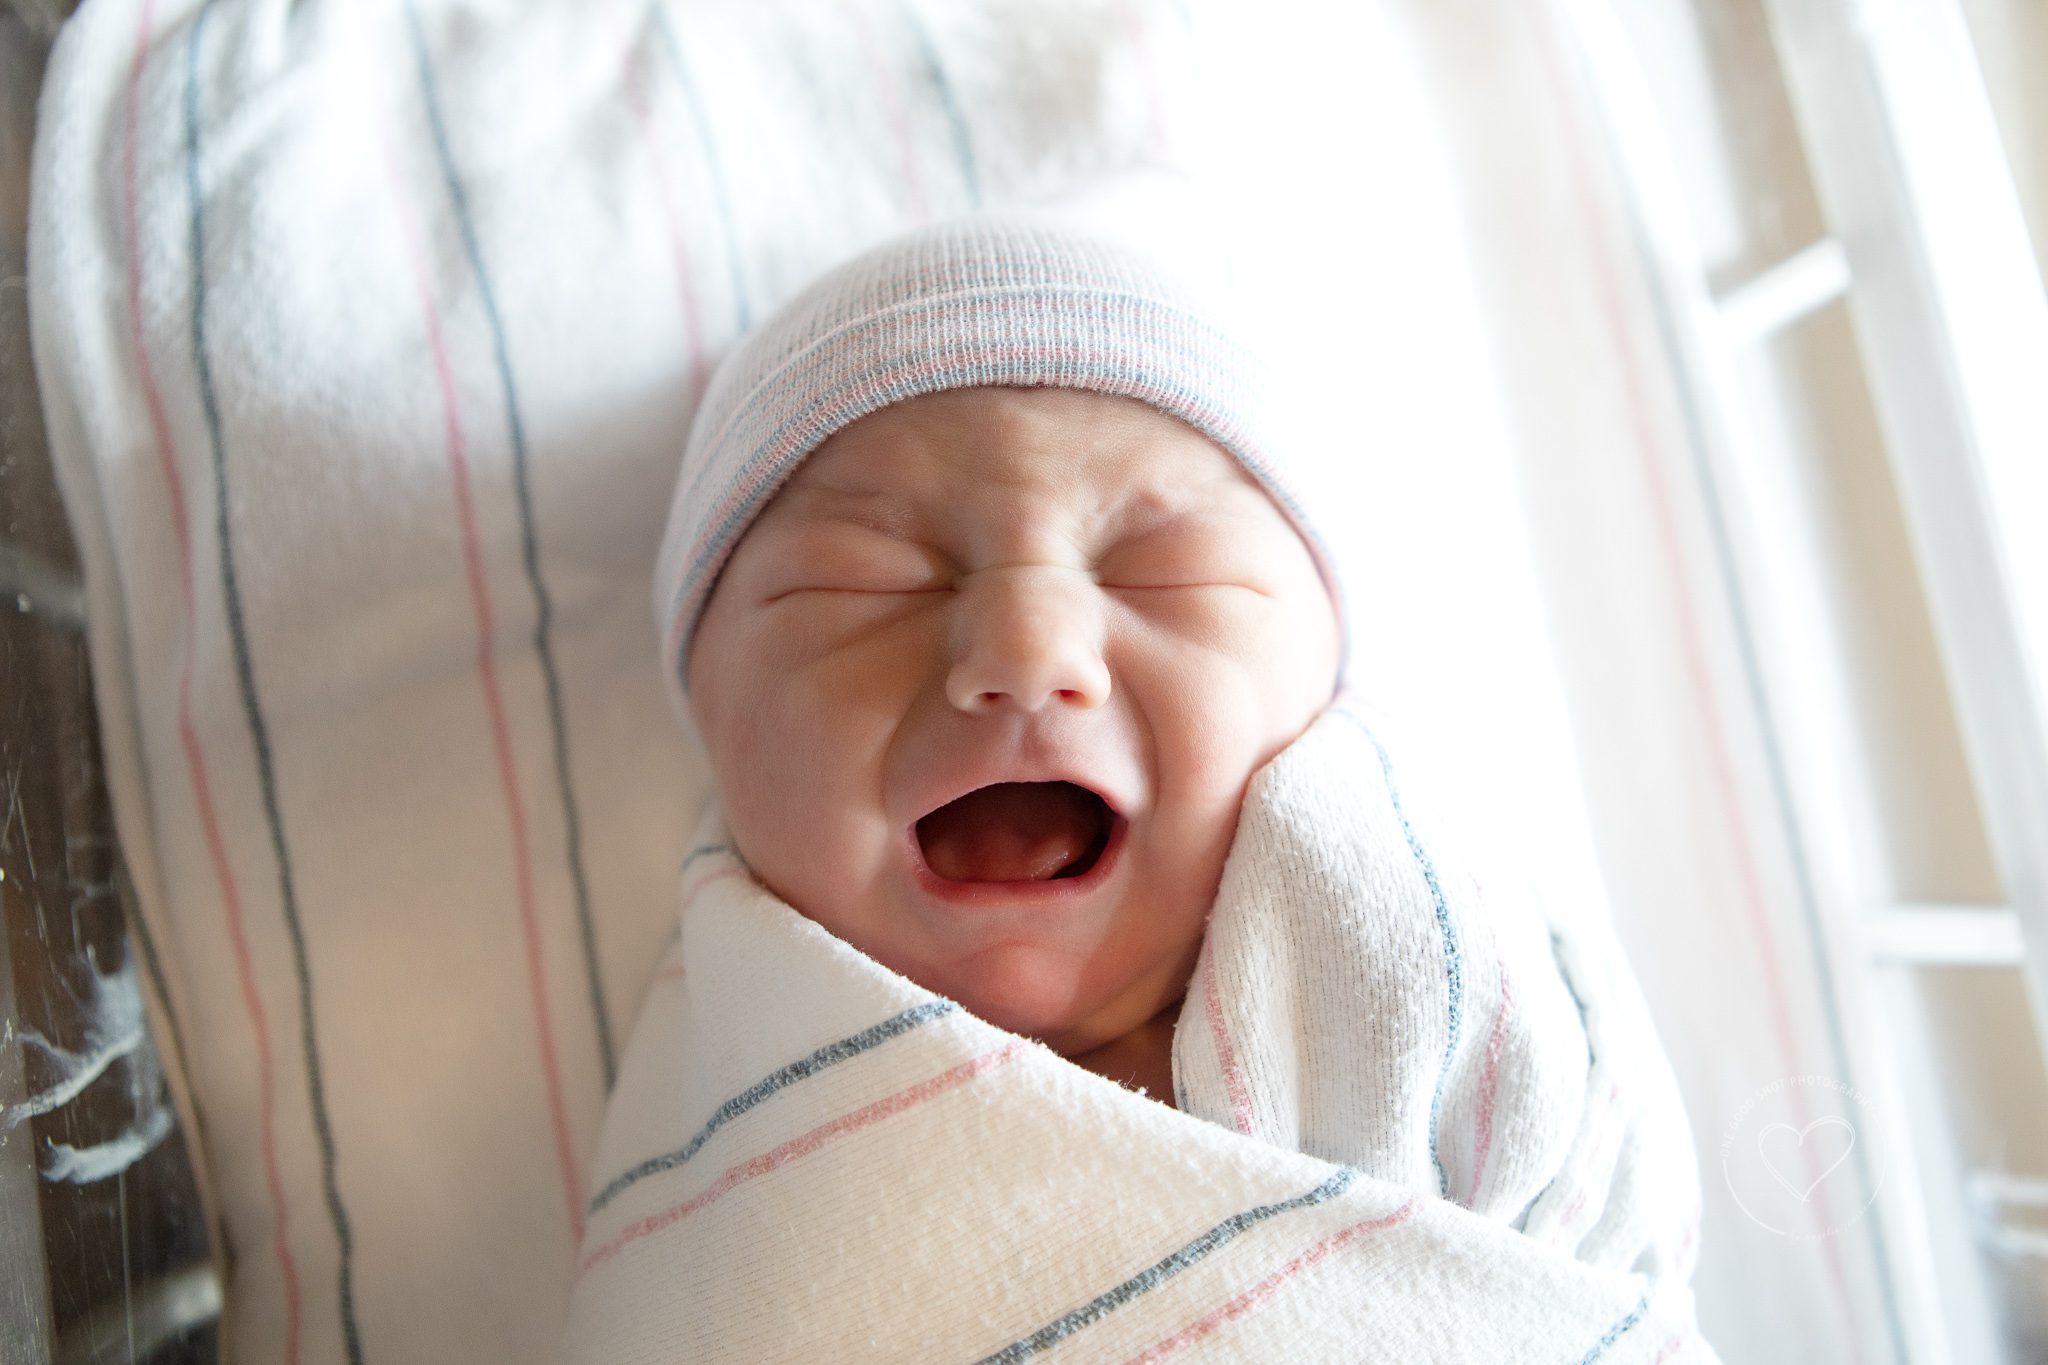 Newborn Baby Fresh 48 Hospital Photos Fresno Clovis, Baby swaddled, crying